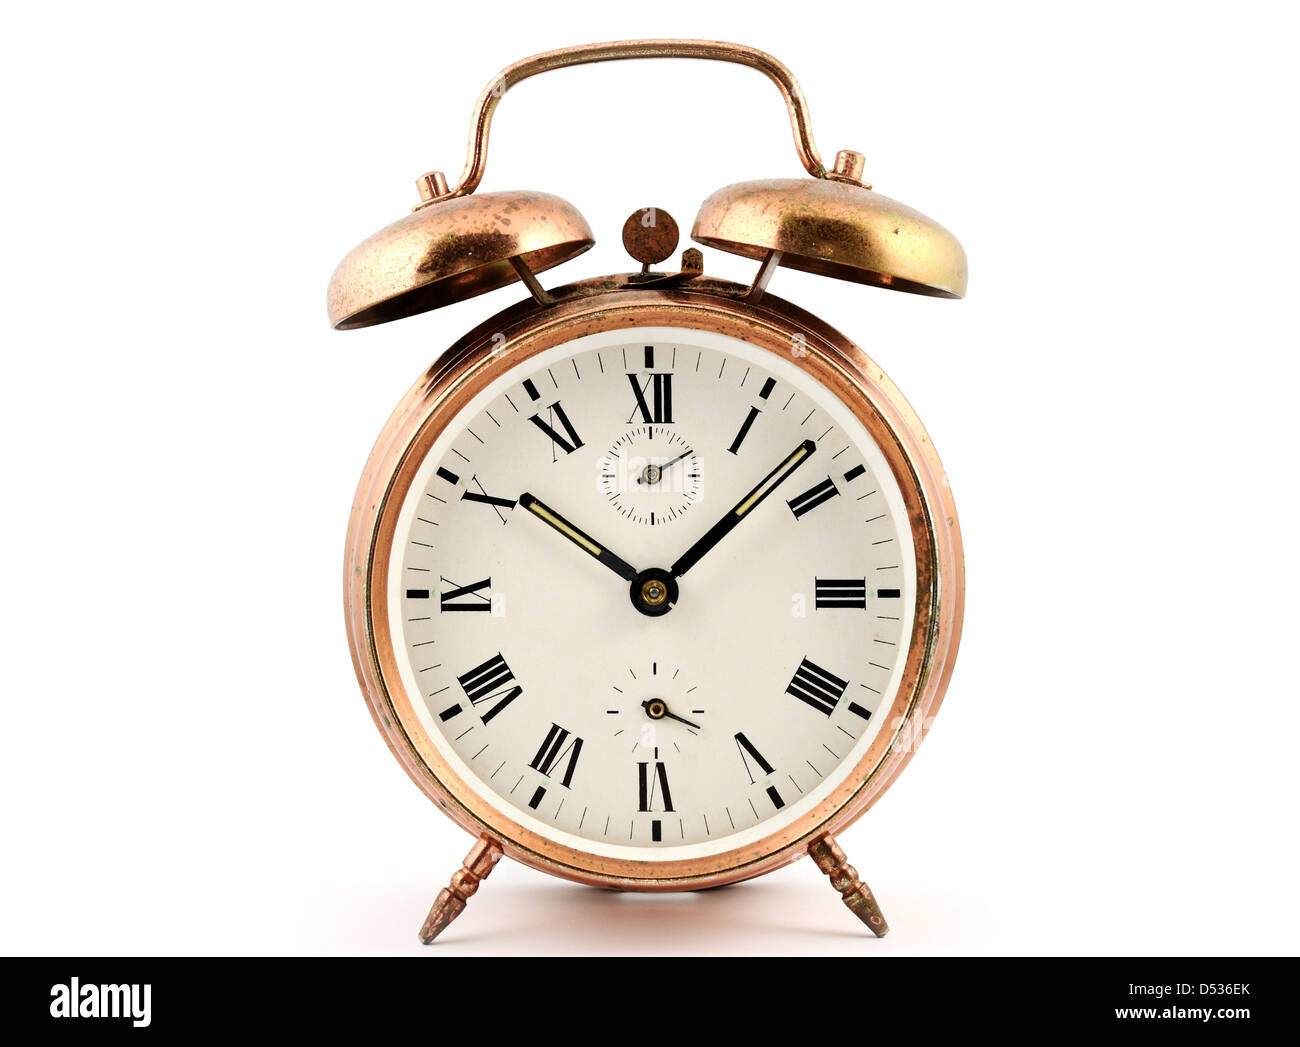 A la vieja usanza de cobre vintage reloj alarma contra un blanco Foto de stock